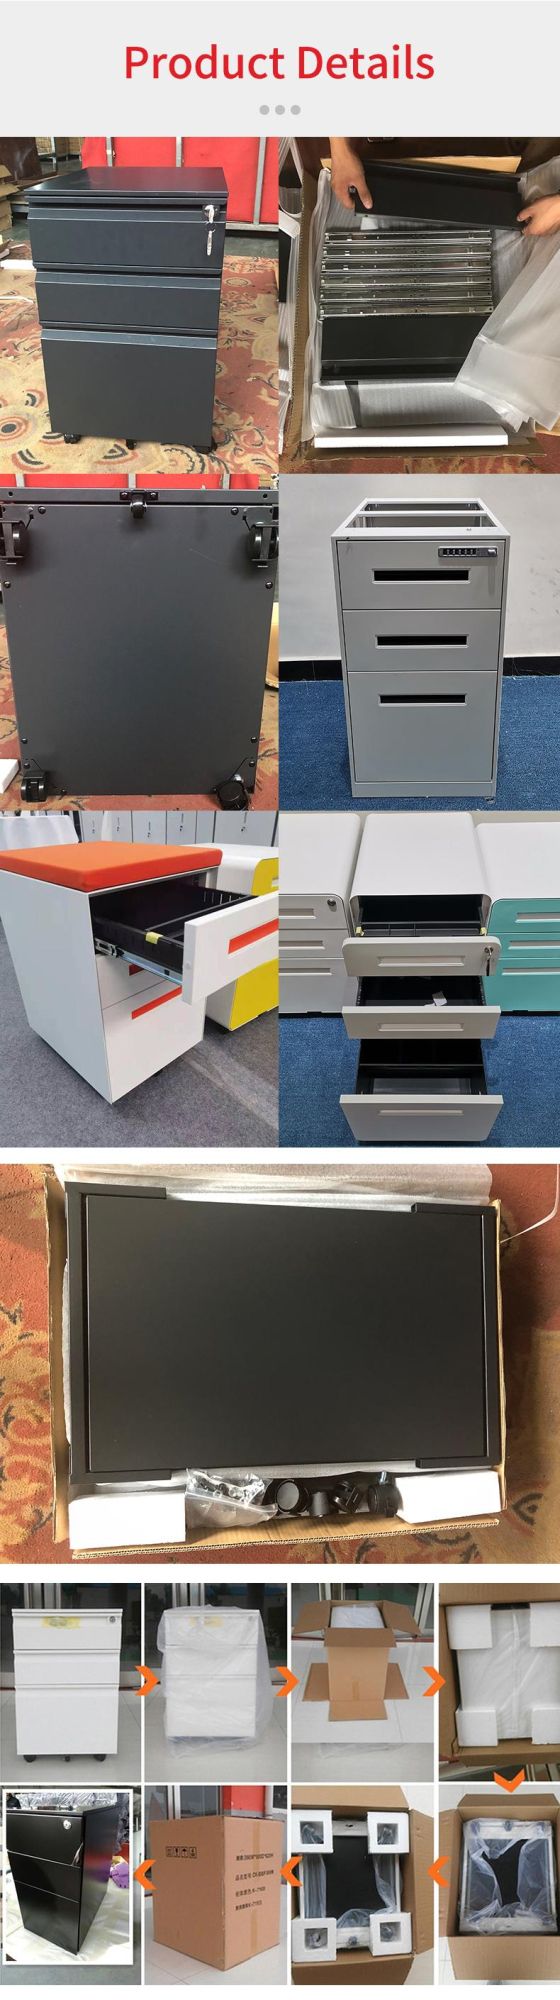 Modern Handle Design Mobile Pedestal Cabinet for Office Home Use